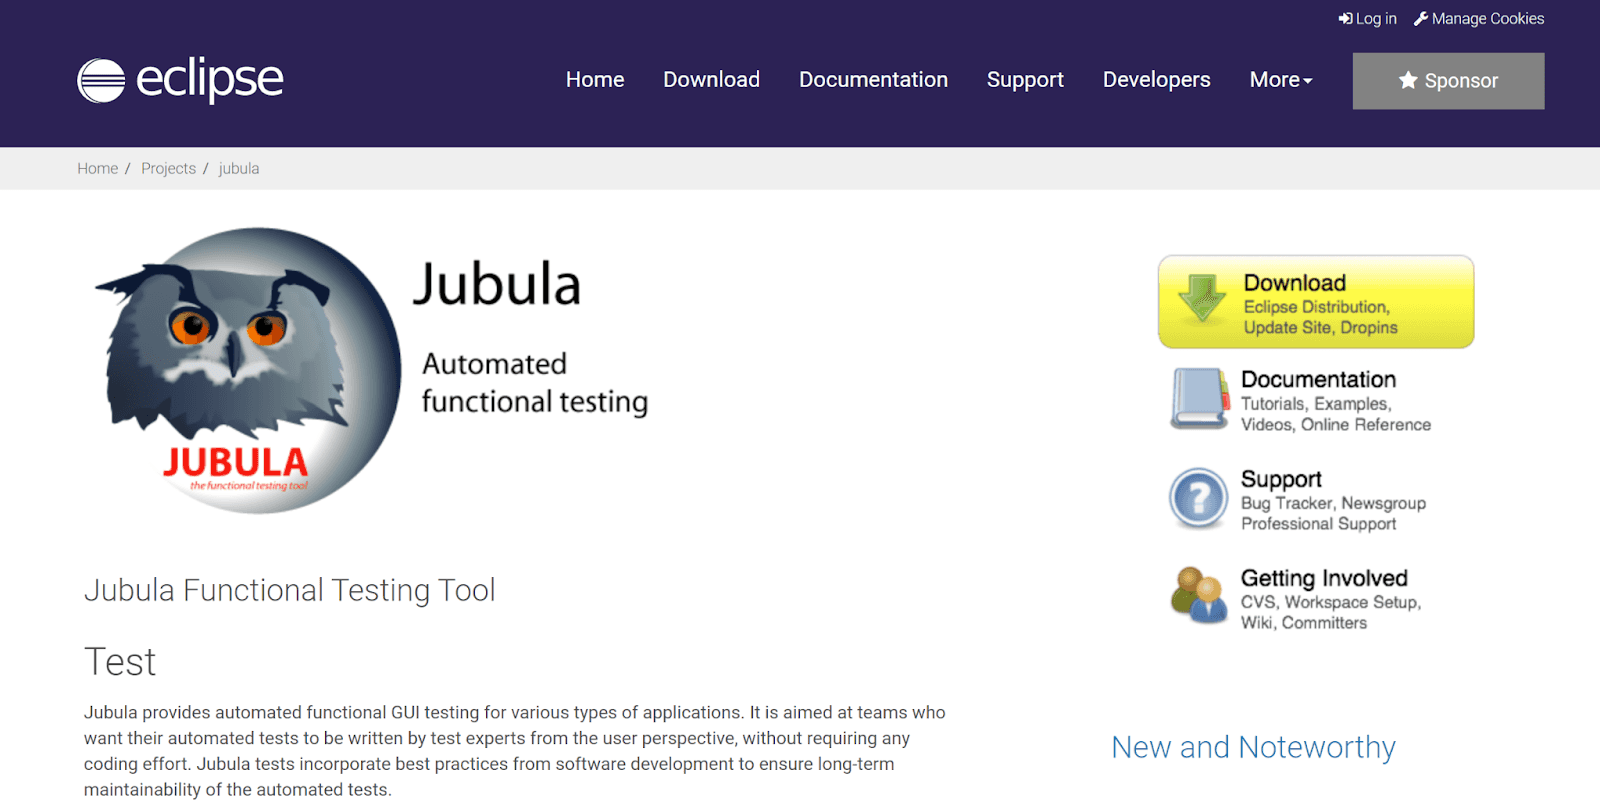 Jubula GUI testing tool